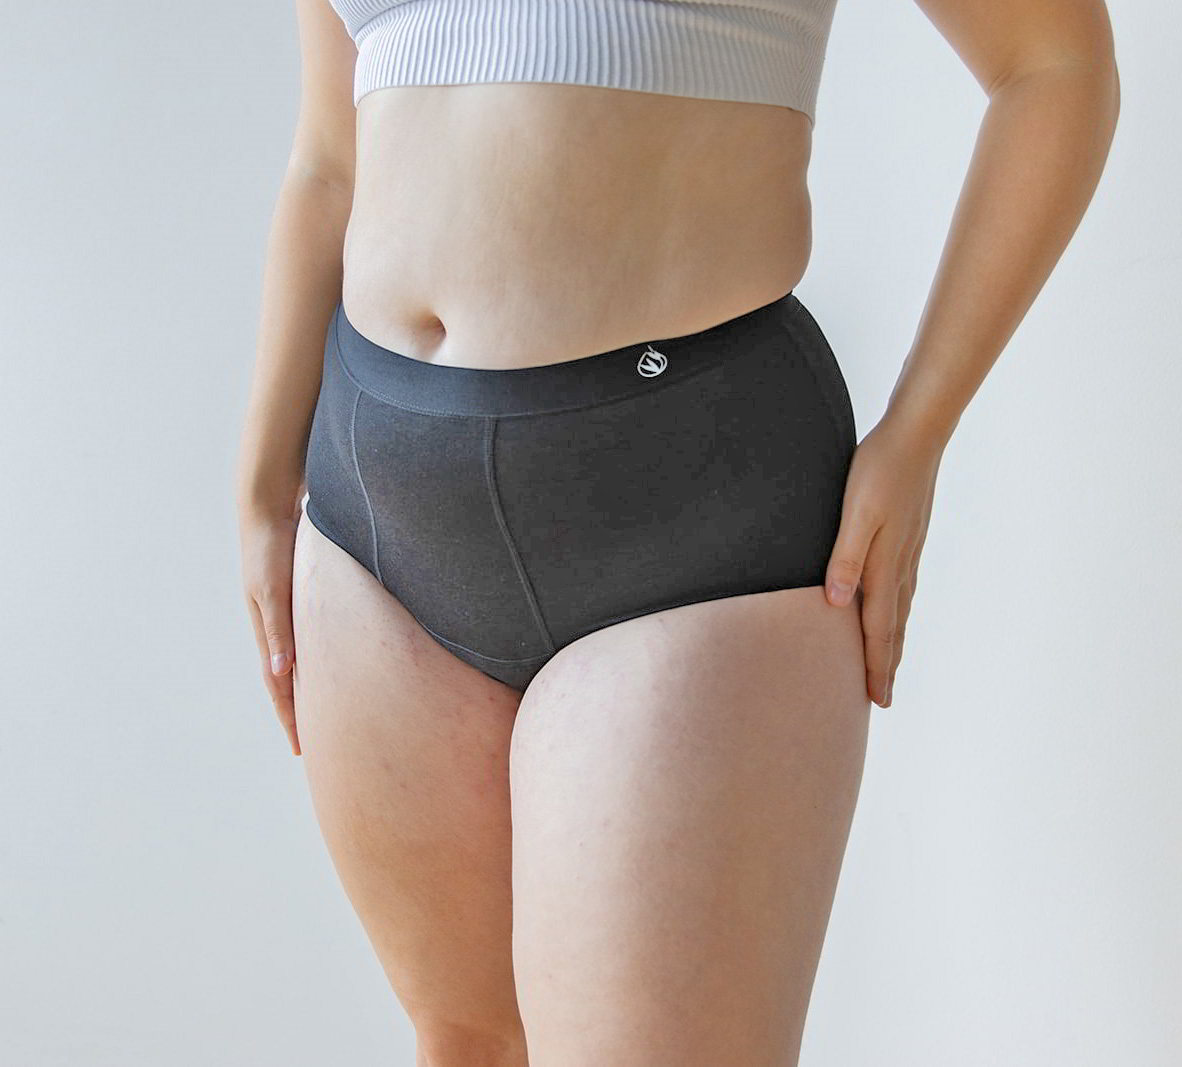 Period Underwear, Women's Leak Proof Undies